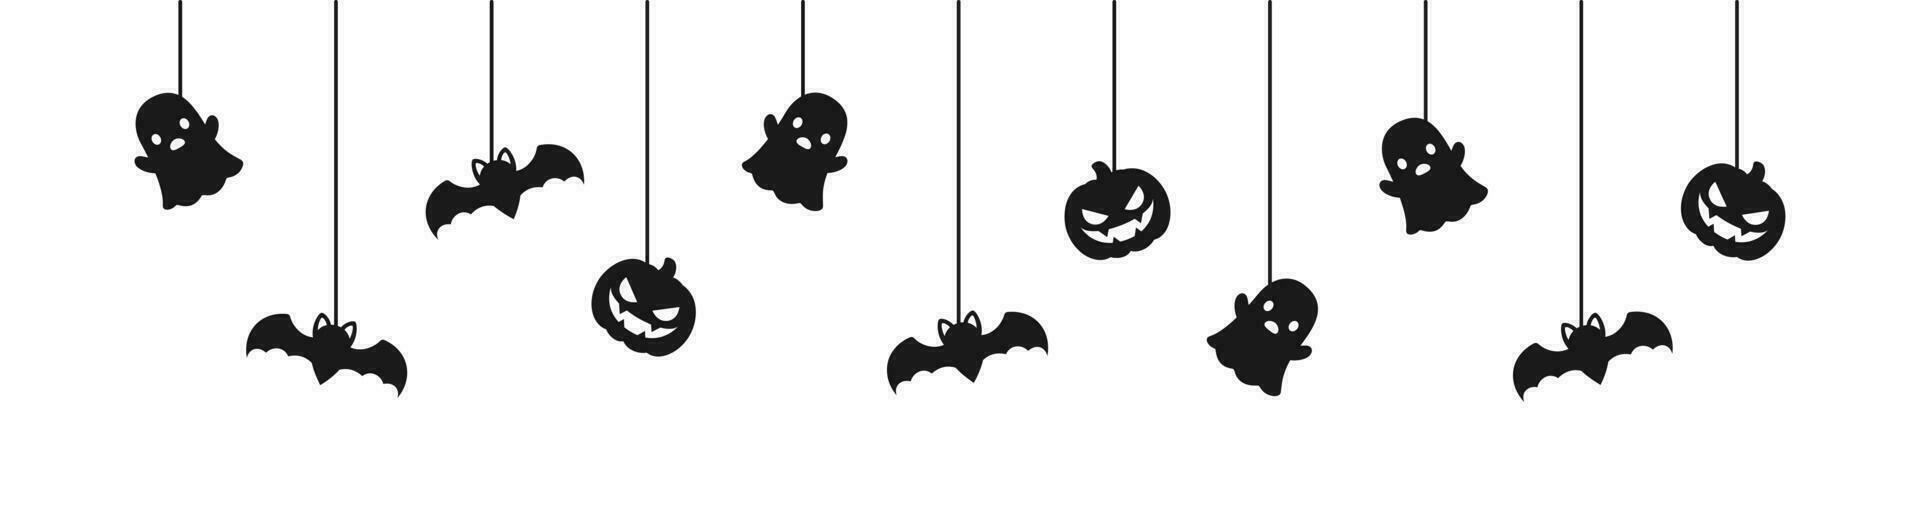 contento Halloween bandiera o confine con nero pipistrelli, fantasma e Jack o lanterna zucche silhouette. sospeso spaventoso ornamenti decorazione vettore illustrazione, trucco o trattare festa invito